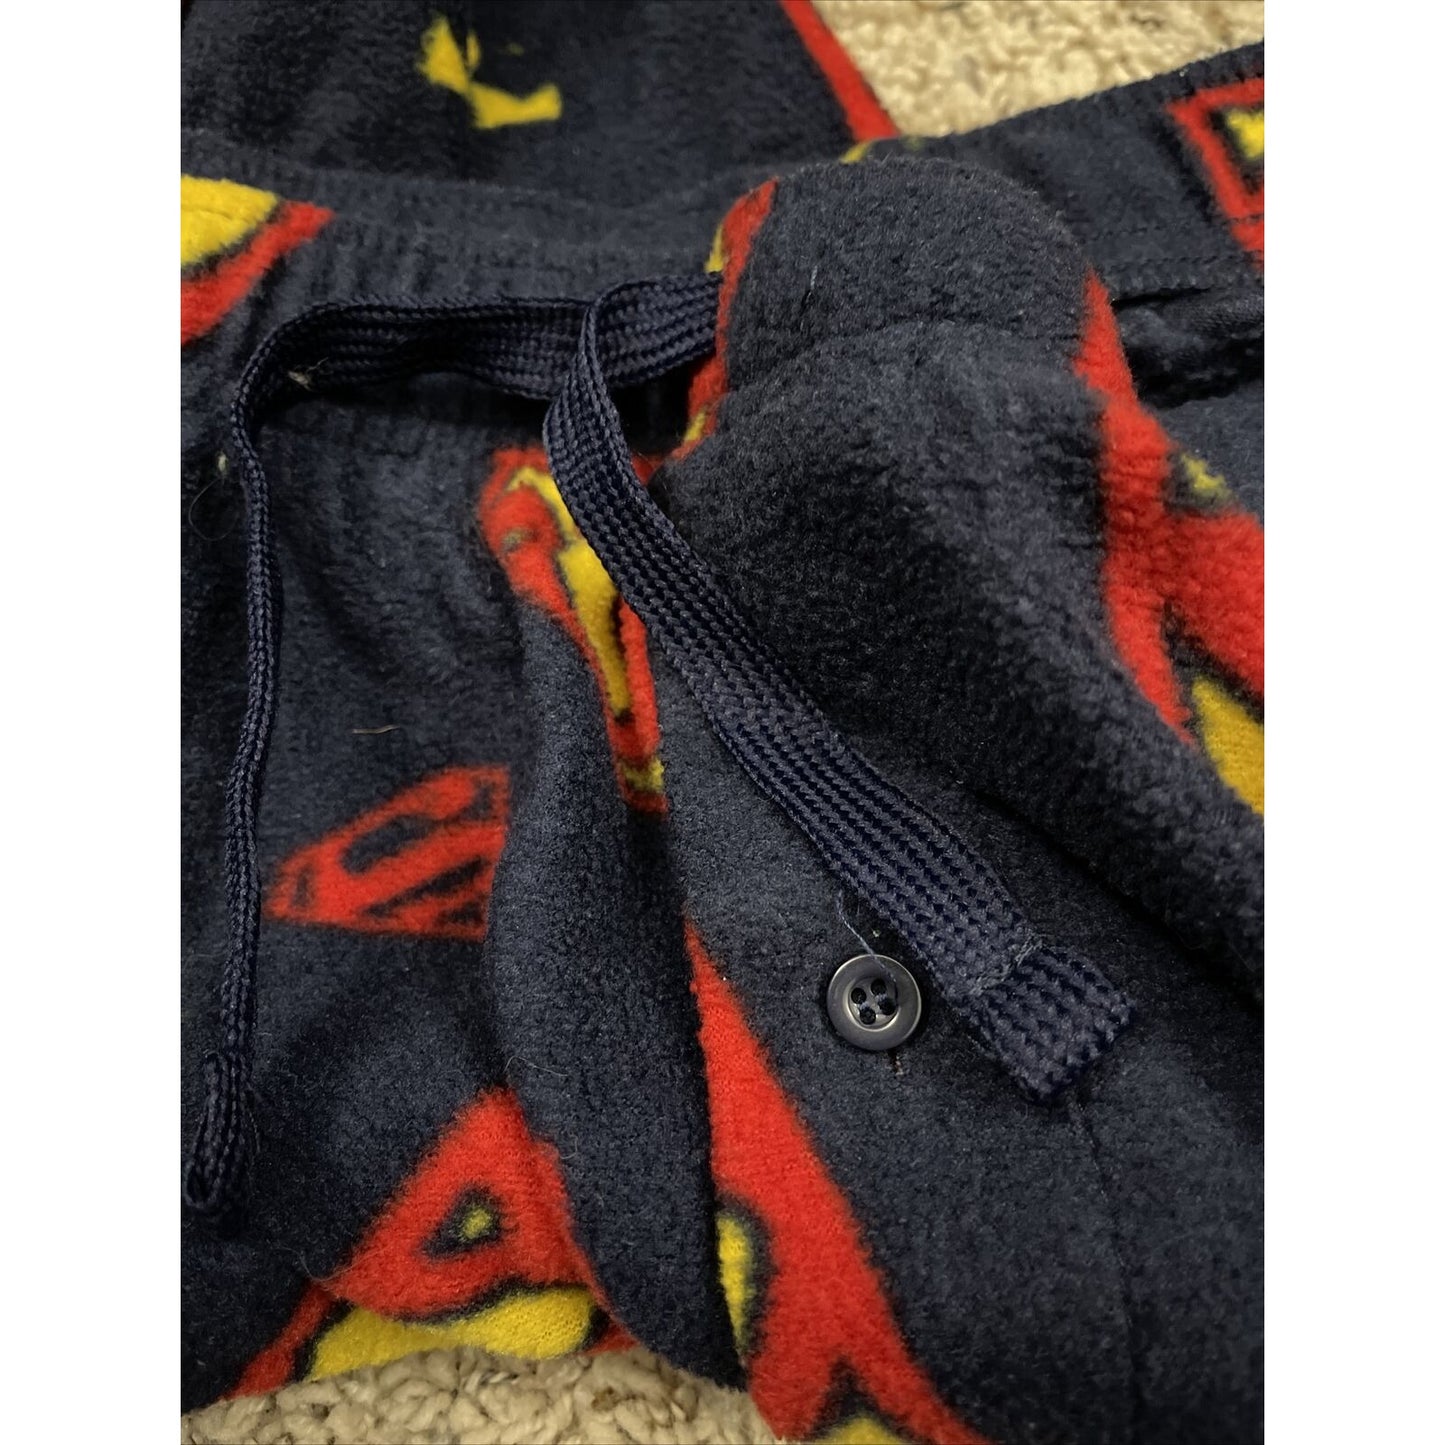 Men’s Superman XXL Lounge Pants sleepwear flannel with pockets